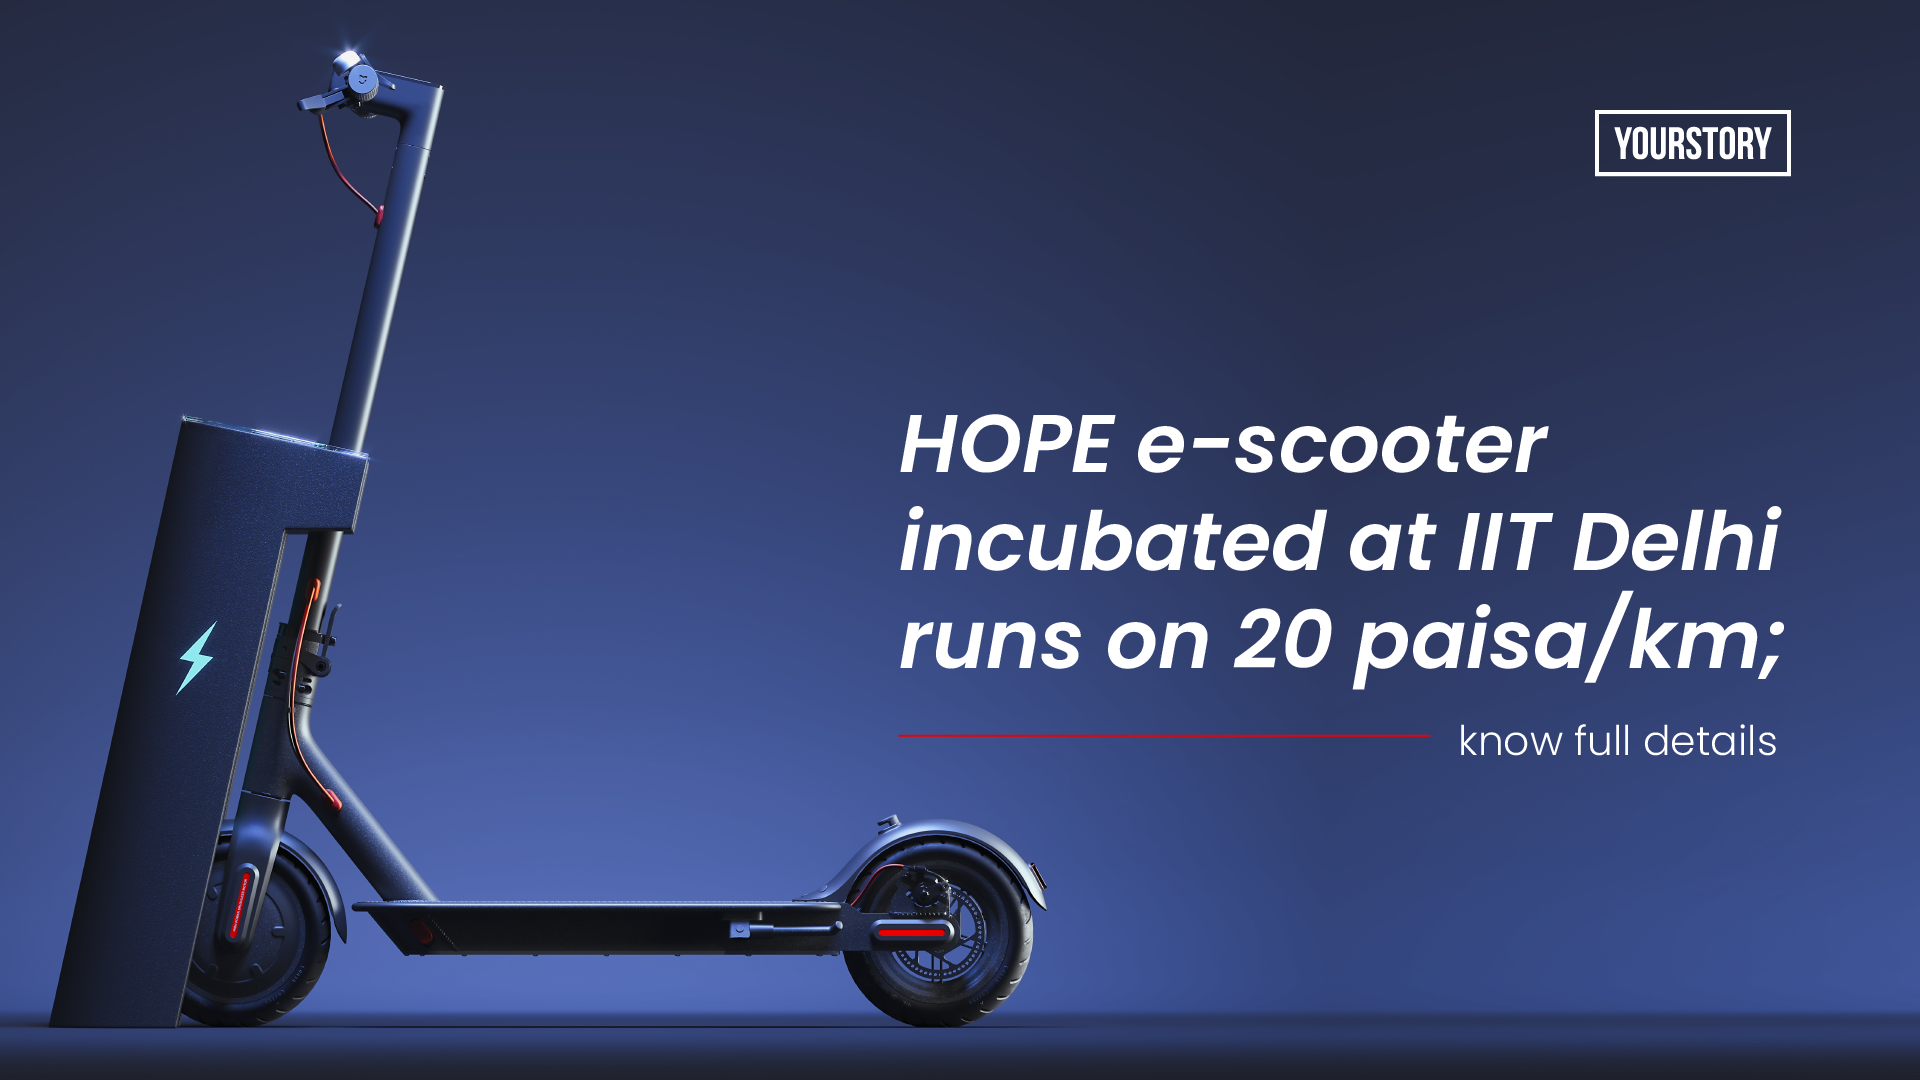 IIT Delhi's e-scooter 'Hope' runs at just 20 paisa/km